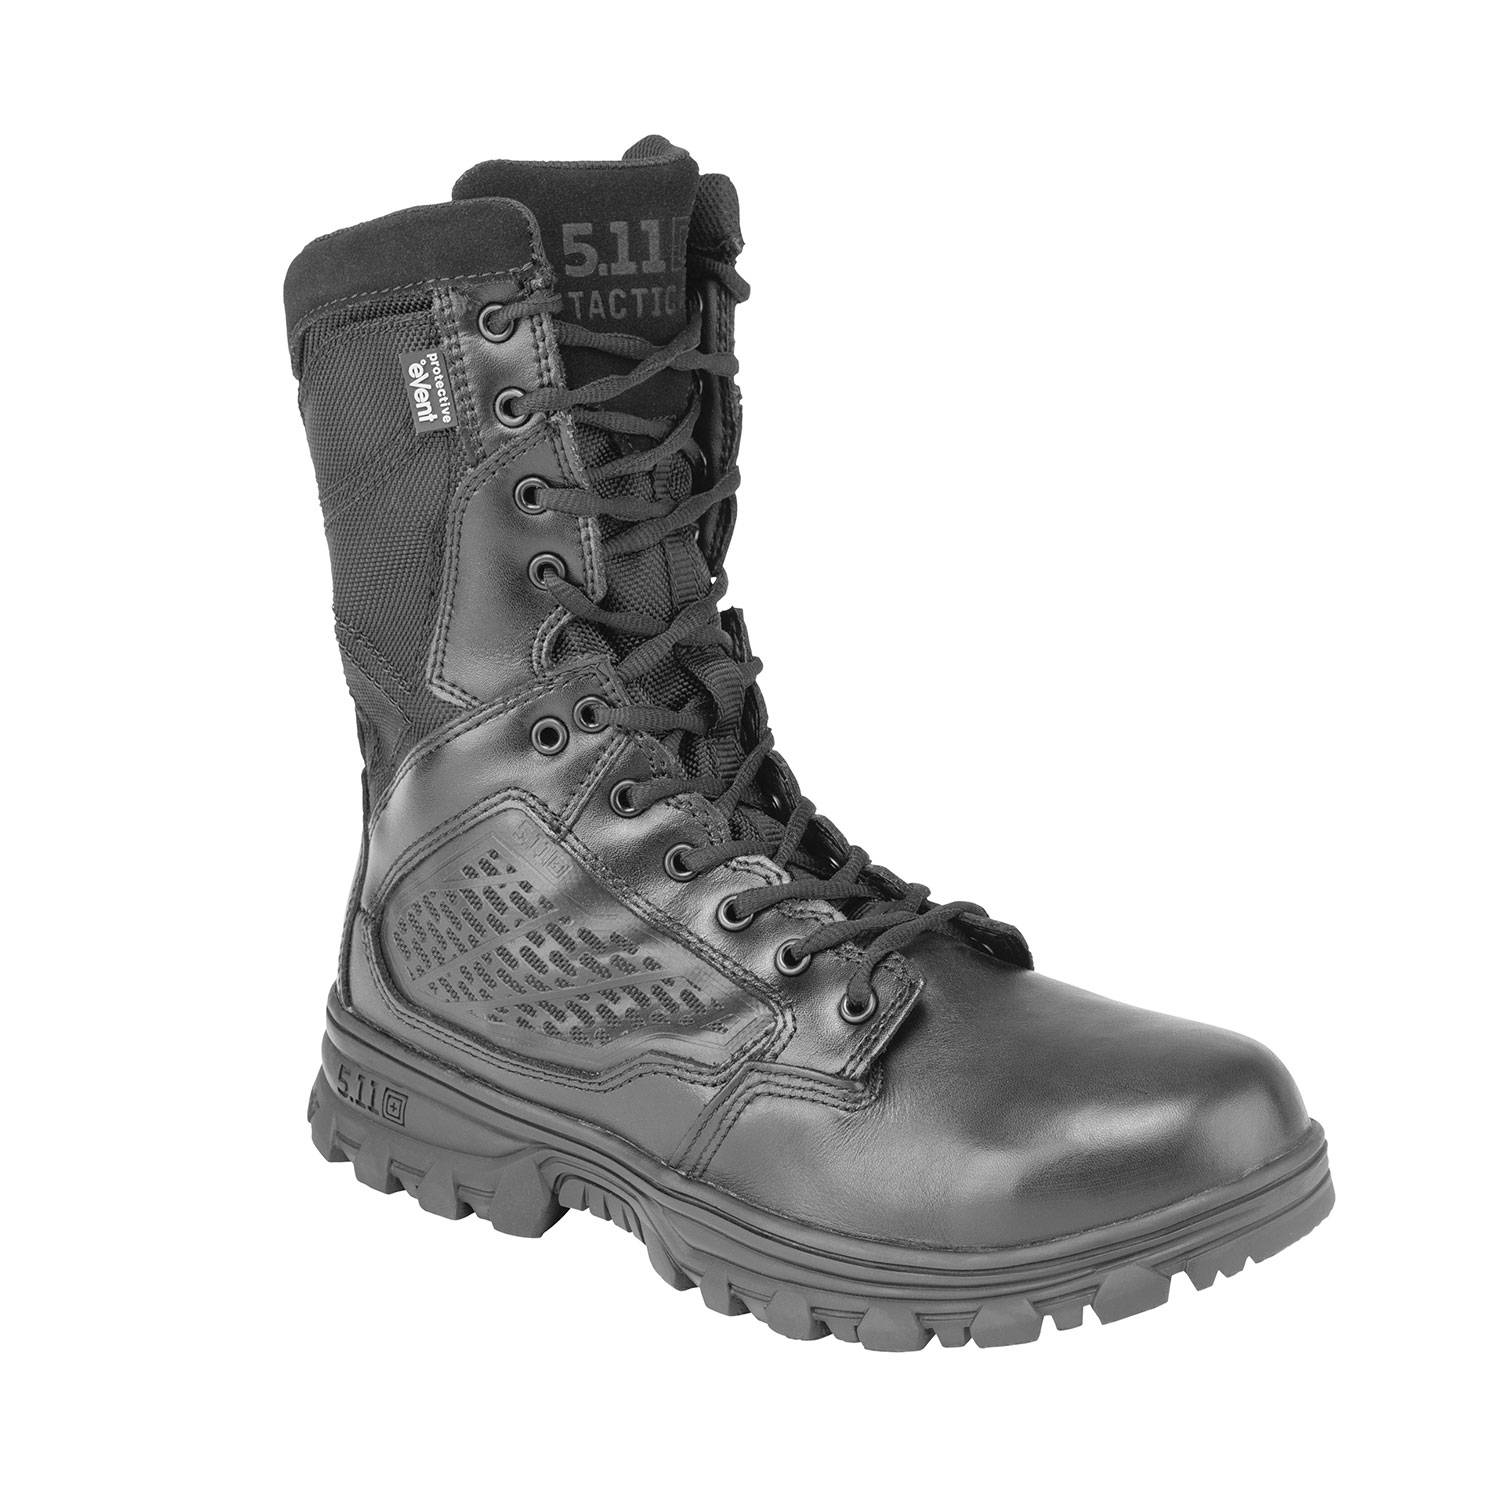 5.11 Tactical 8" EVO Side Zip Waterproof Boots